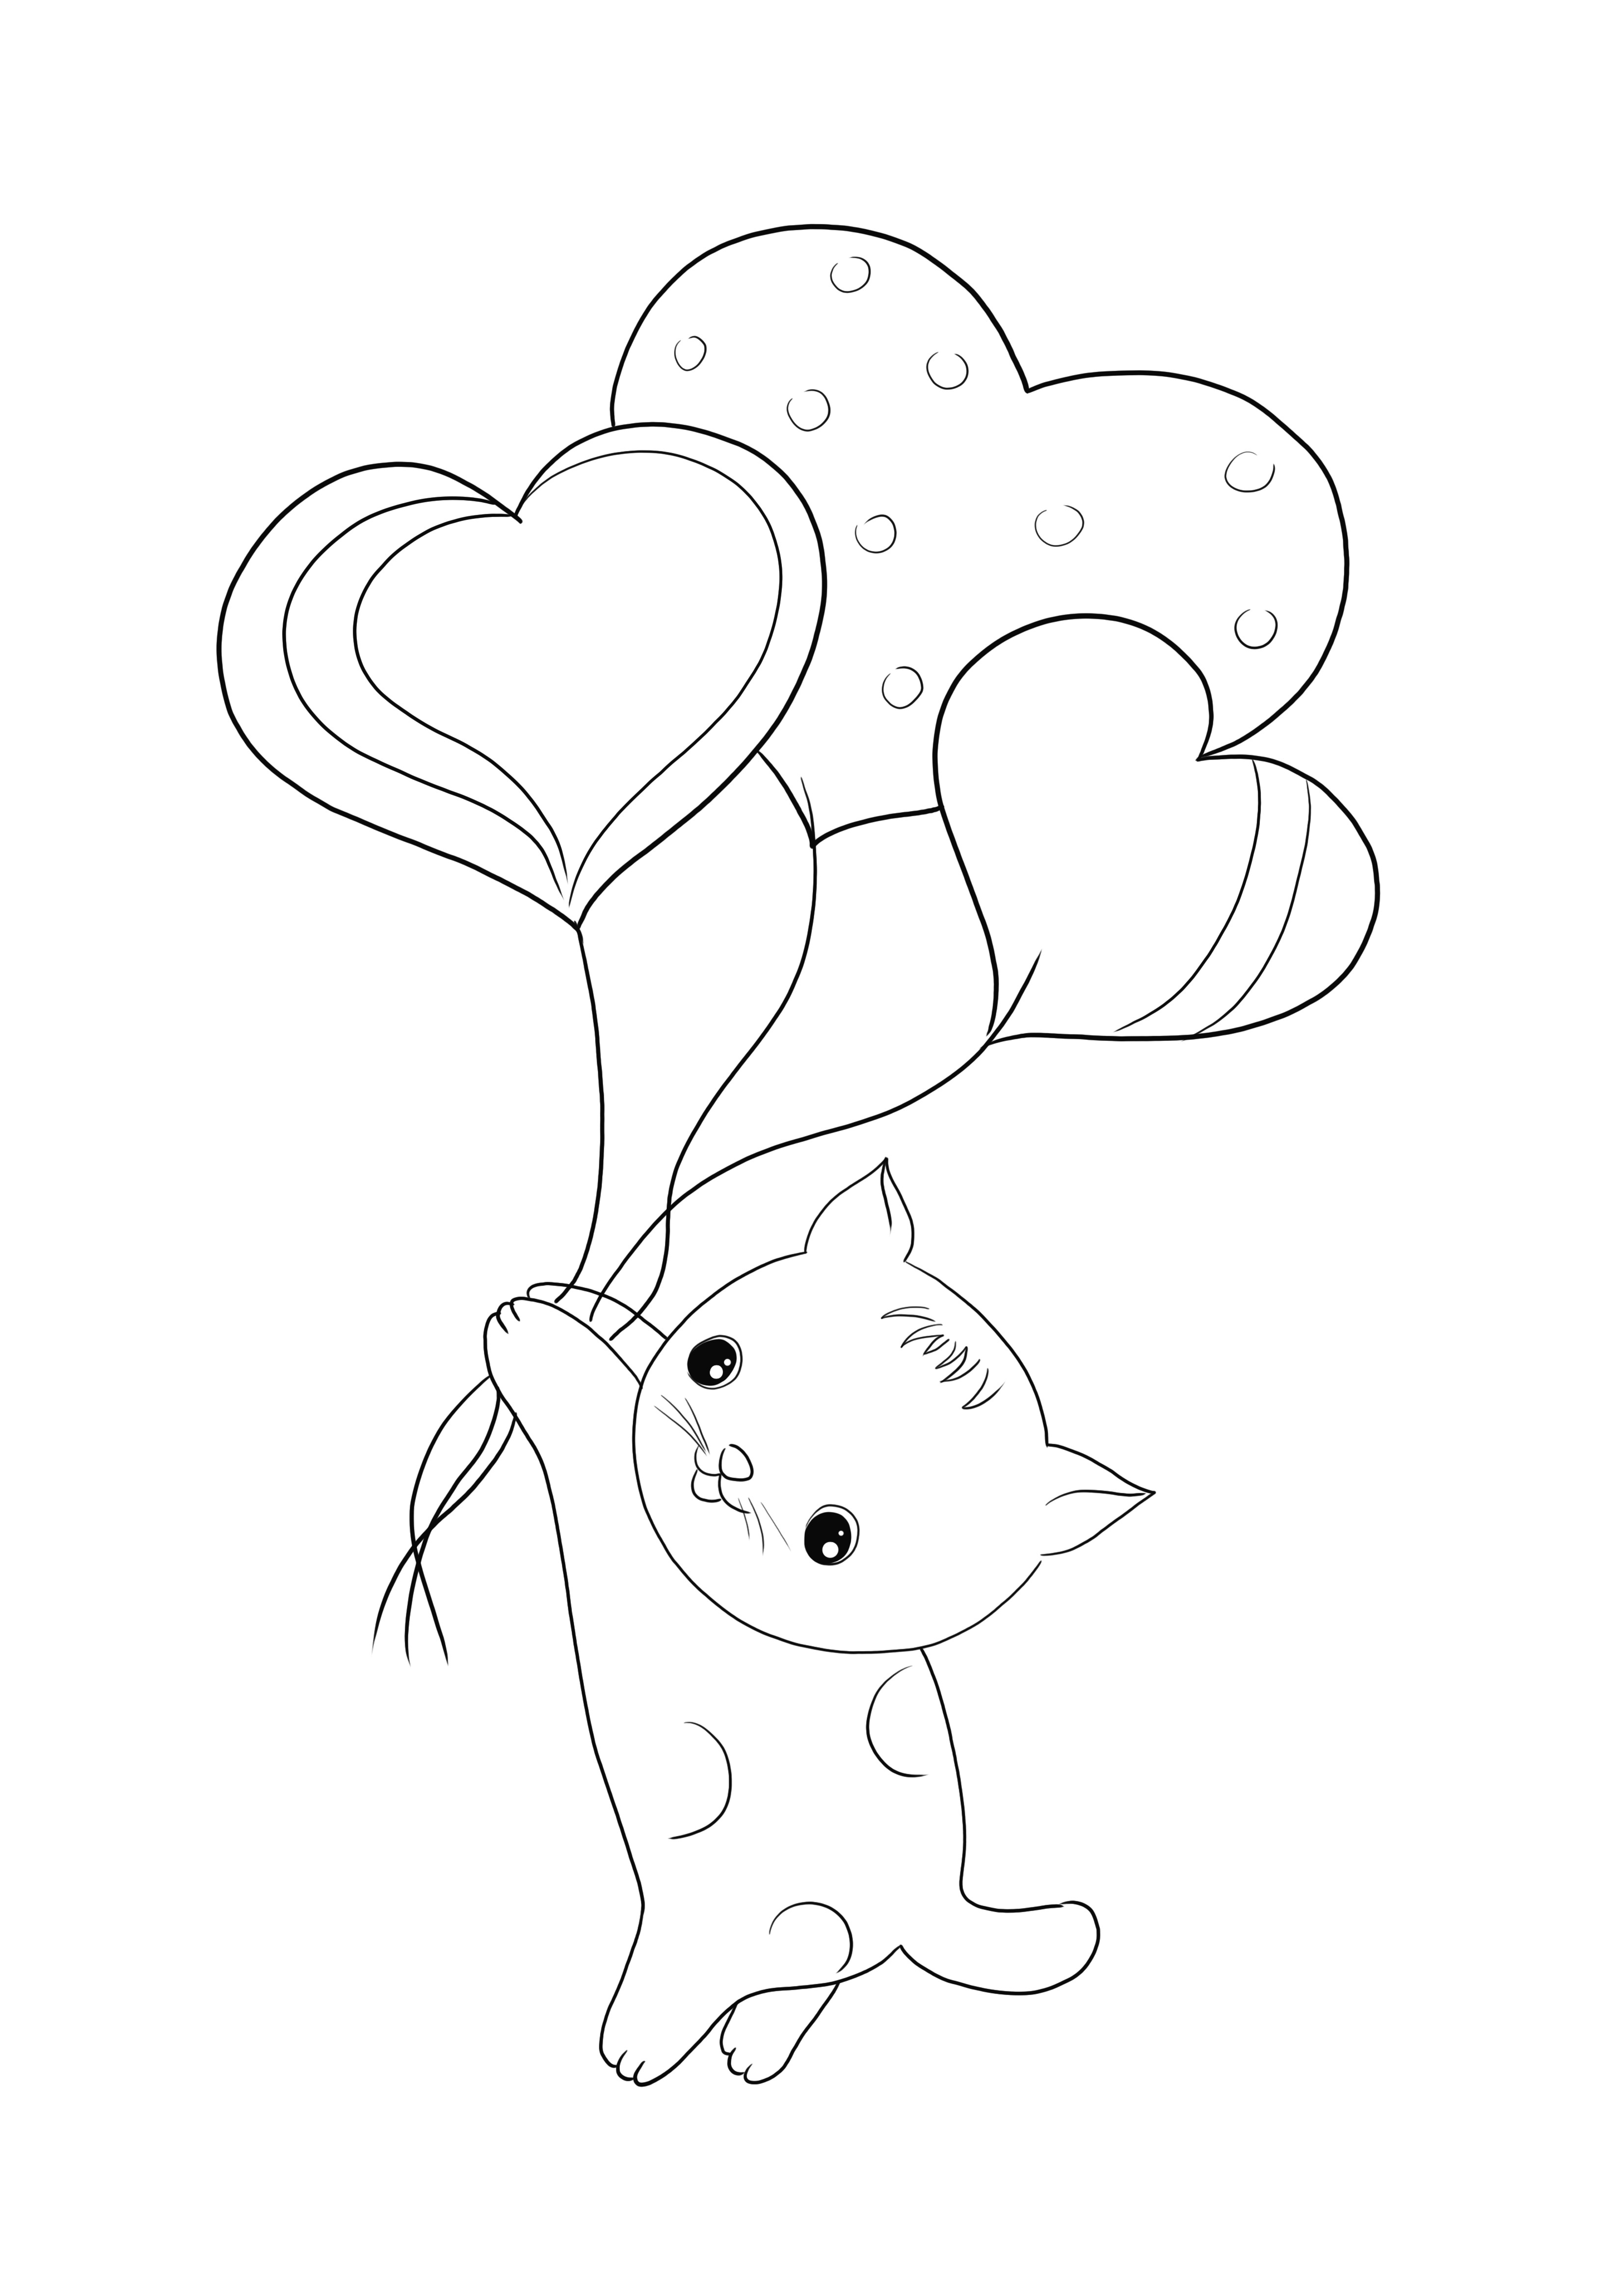 Kot z balonami w kształcie serca do wydrukowania za darmo i prosty obraz do kolorowania dla dzieci